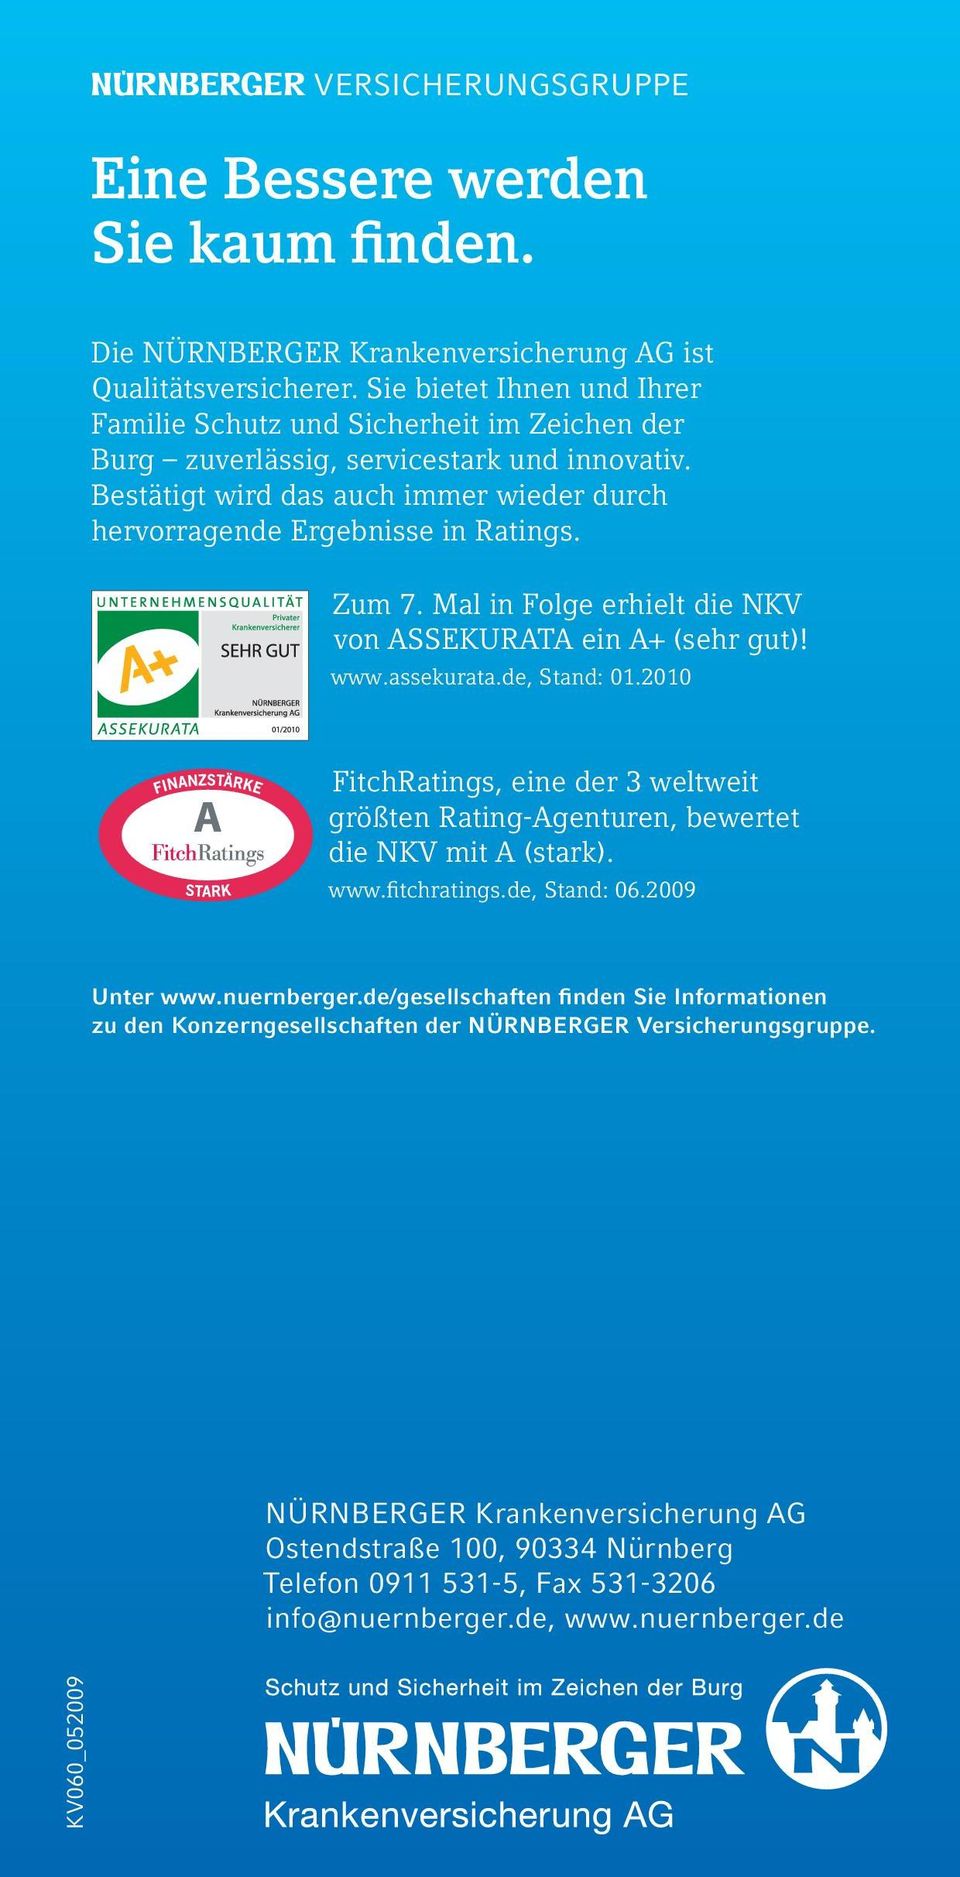 Zum 7. Mal in Folge erhielt die NKV von ASSEKURATA ein A+ (sehr gut)! www.assekurata.de, Stand: 01.2010 FitchRatings, eine der 3 weltweit größten Rating-Agenturen, bewertet die NKV mit A (stark). www.fitchratings.